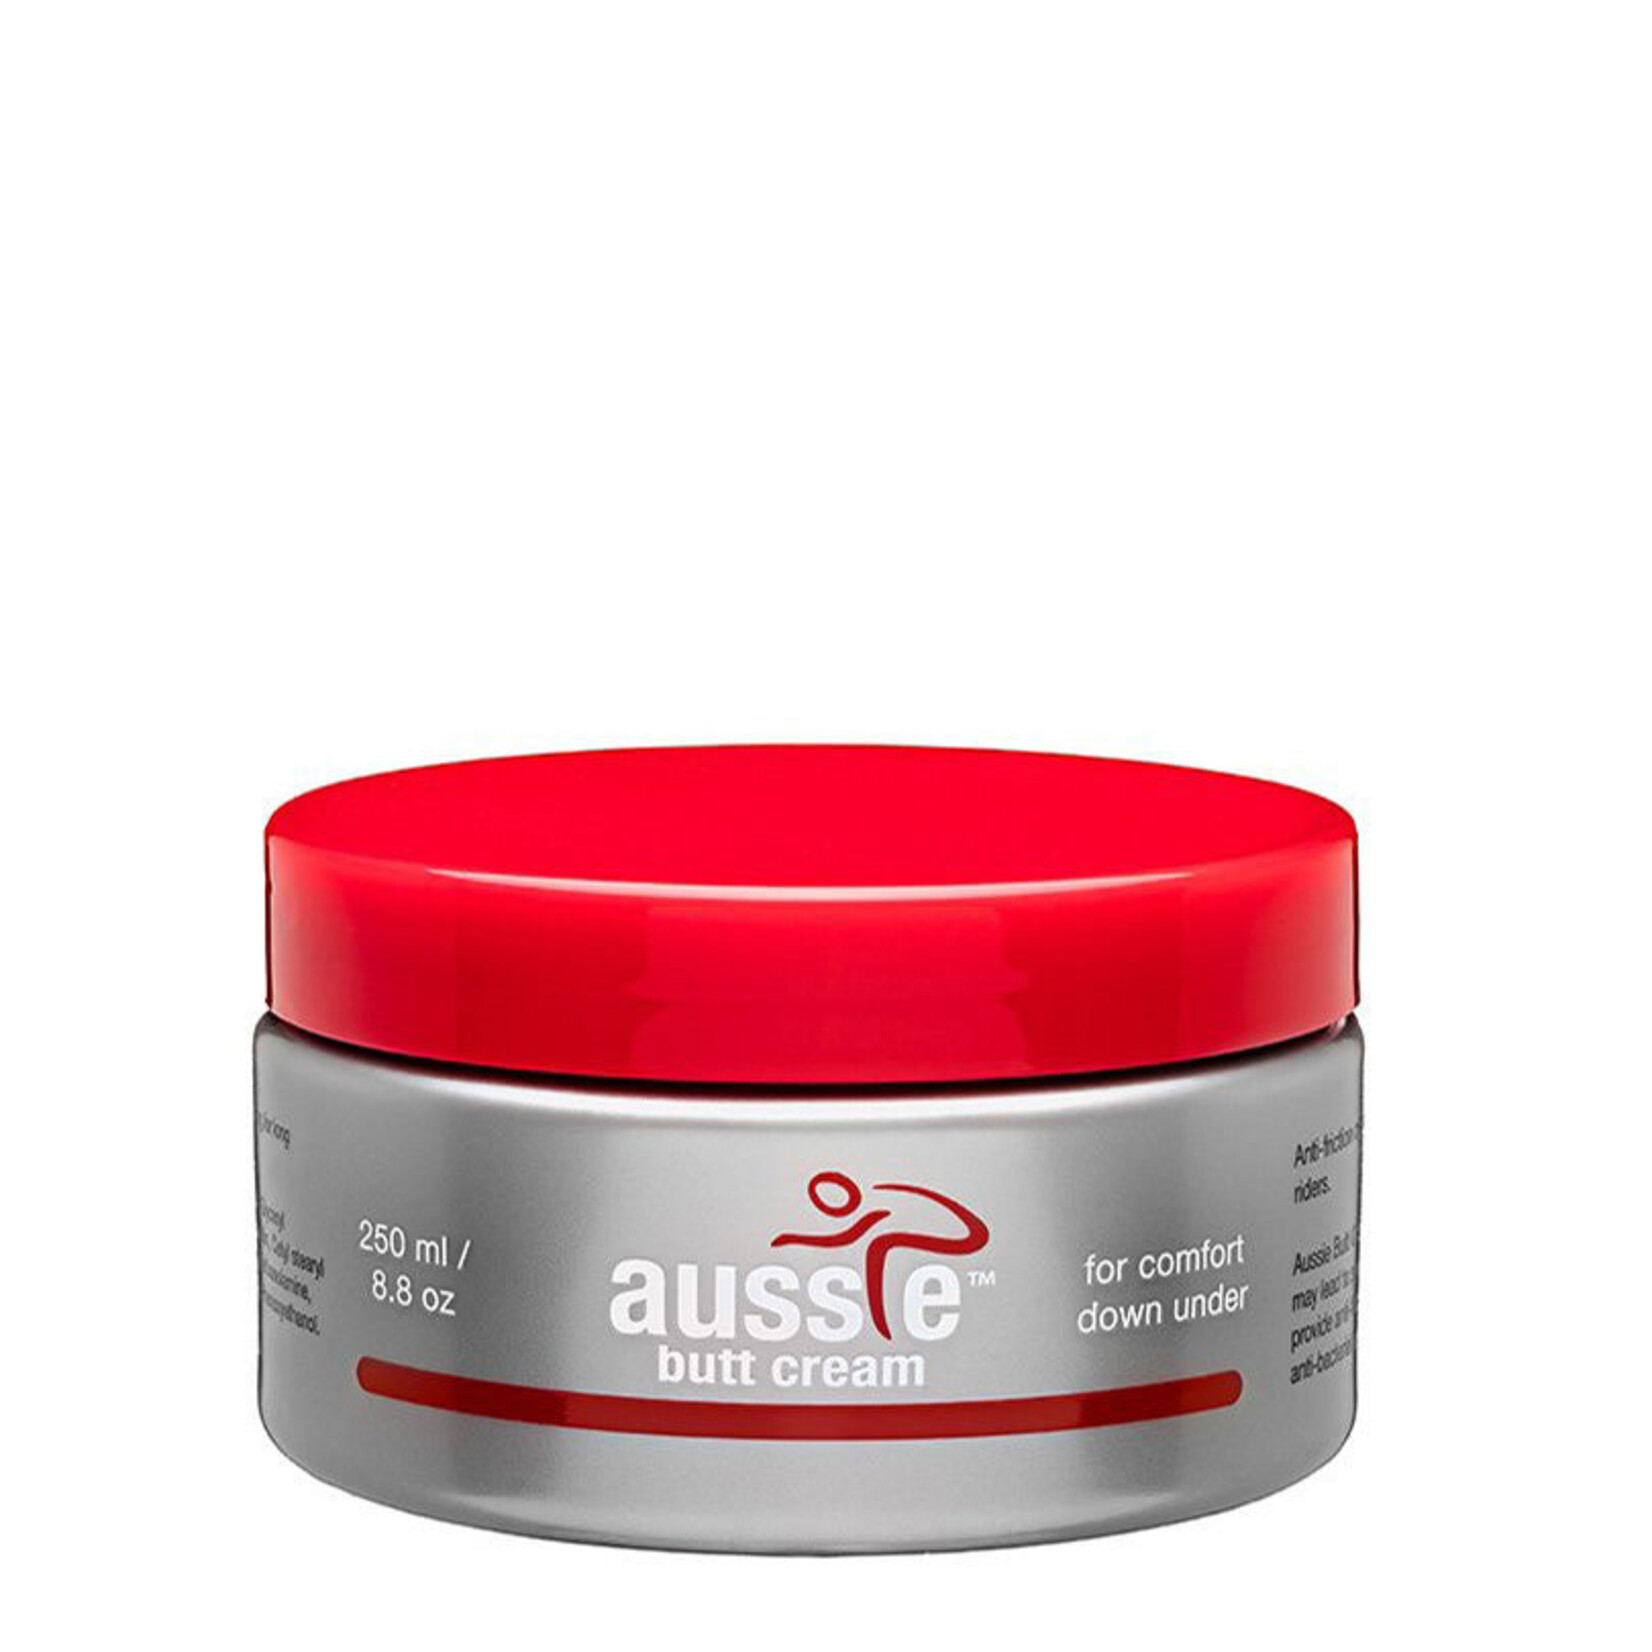 Aussie Butt Cream 250ML JAR